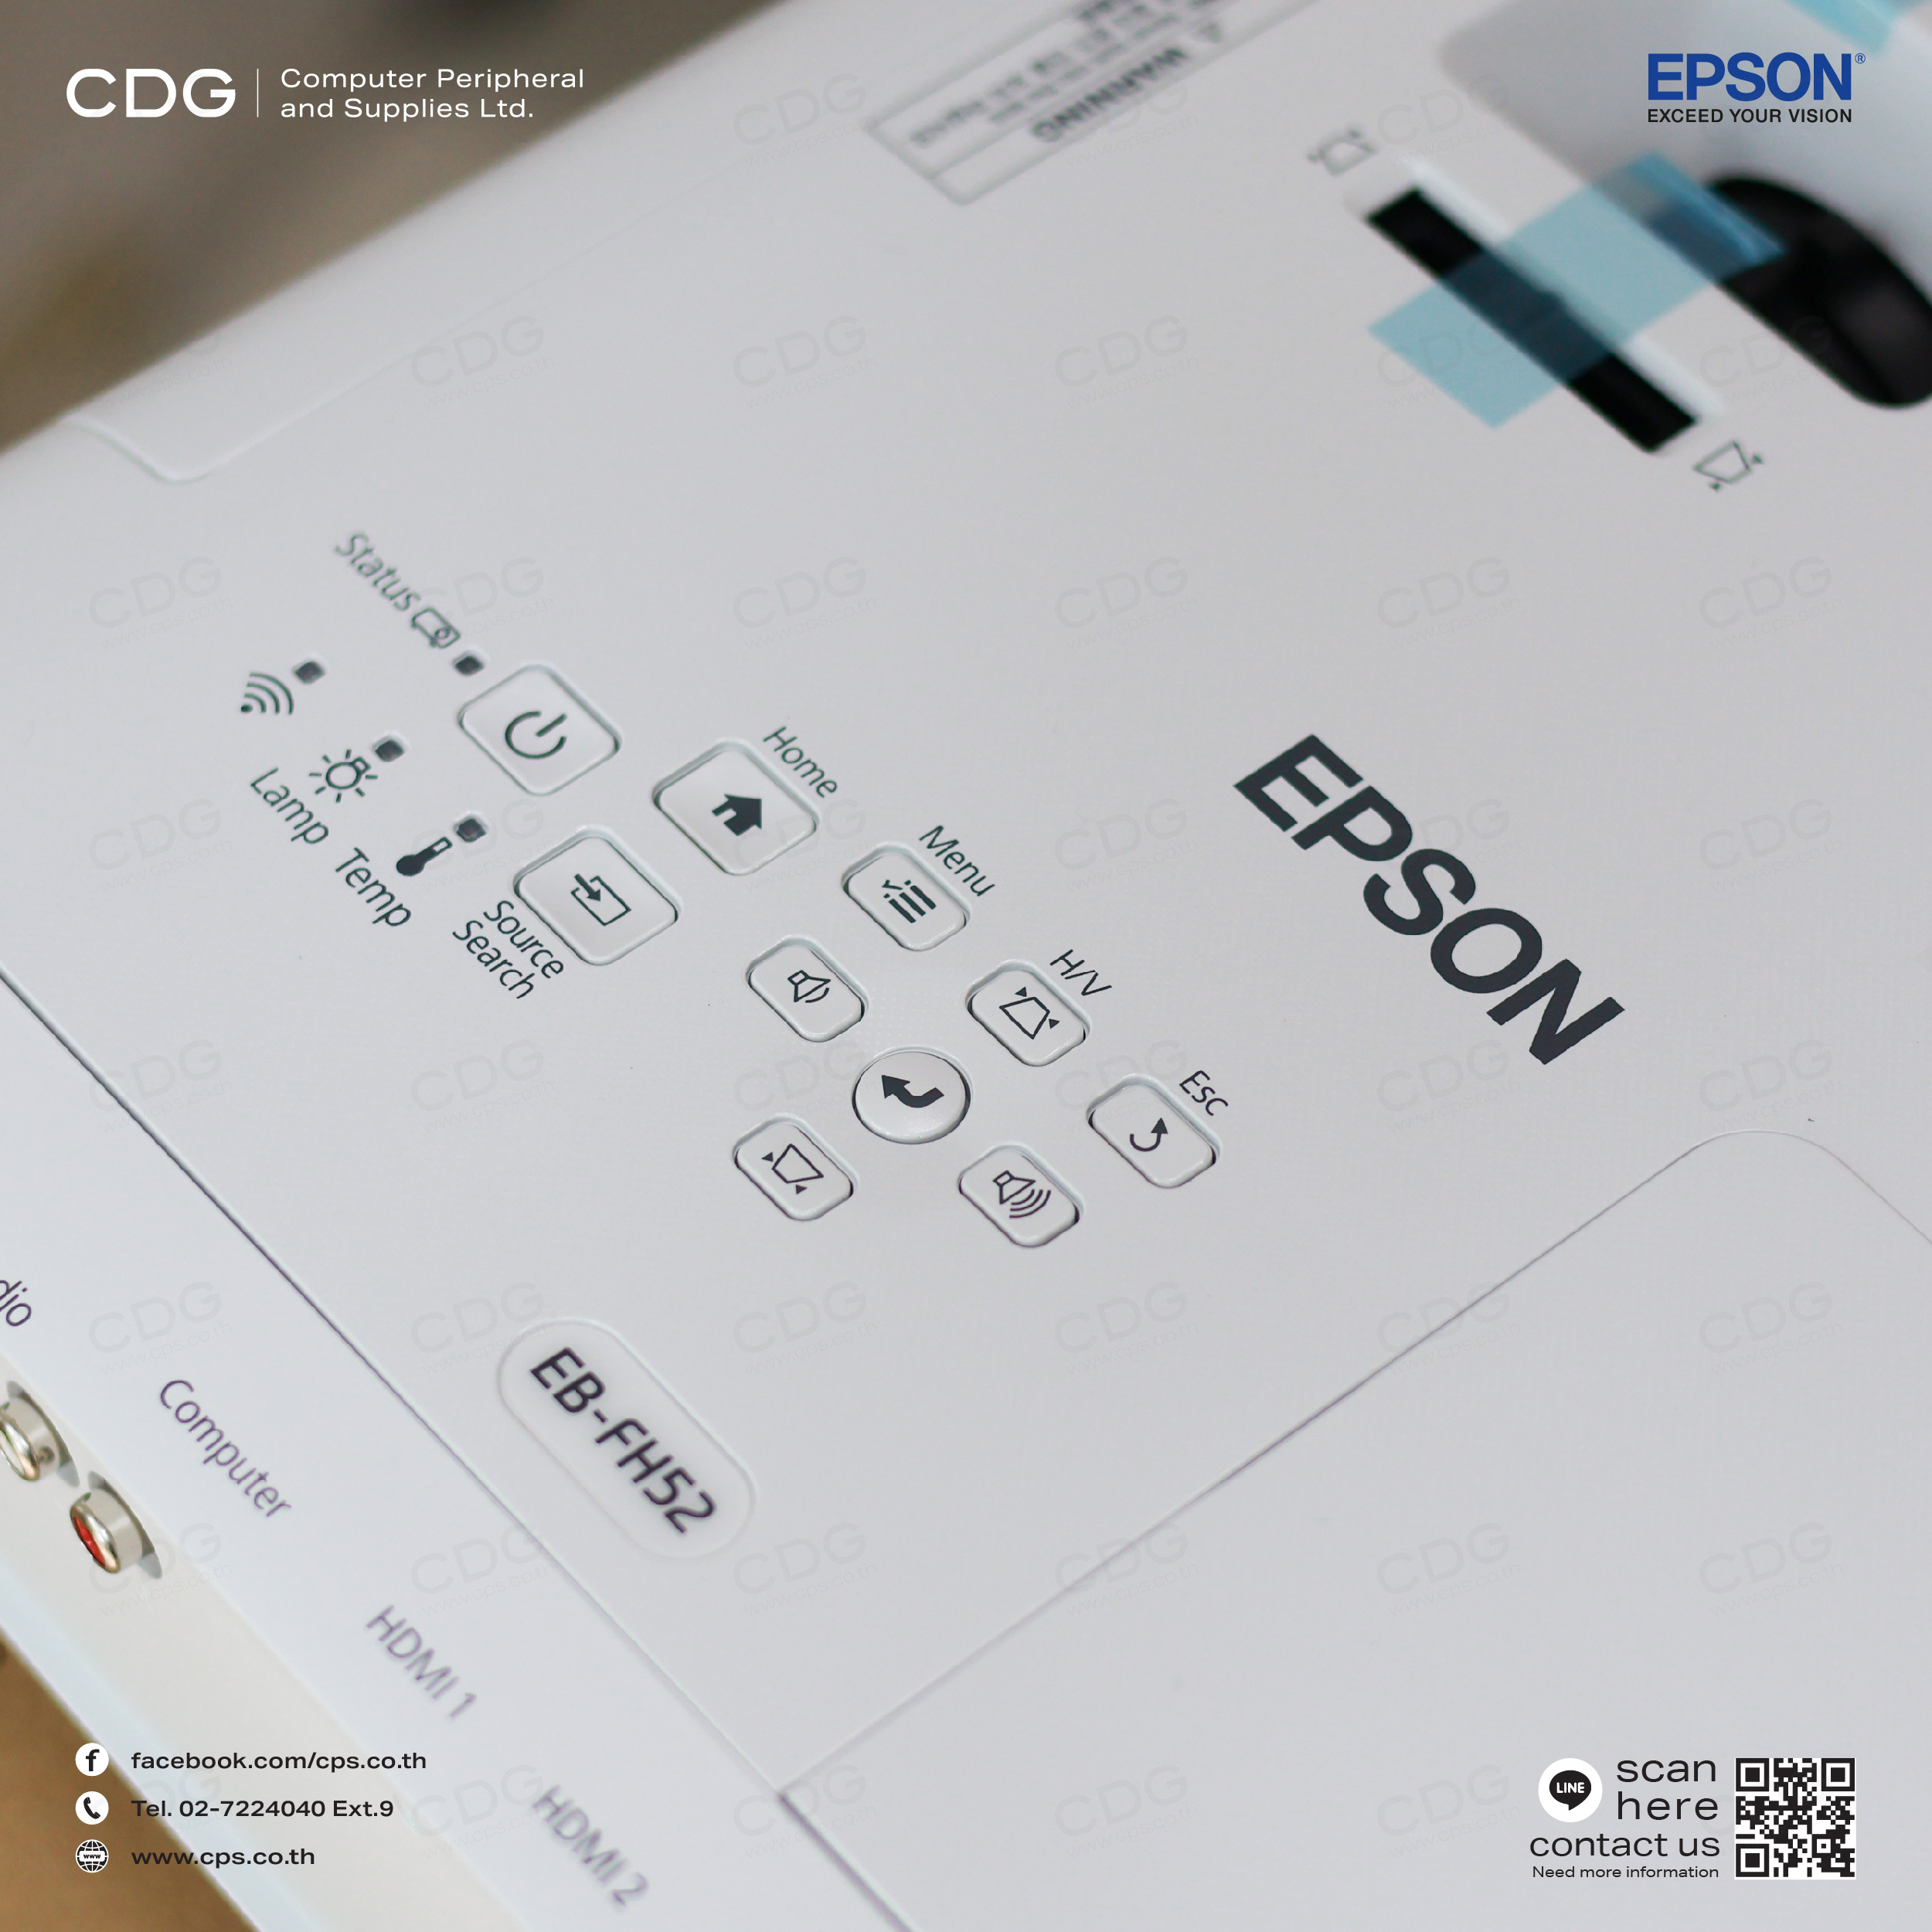 โปรเจคเตอร์ Epson EB-FH52 Full HD 3LCD Projector